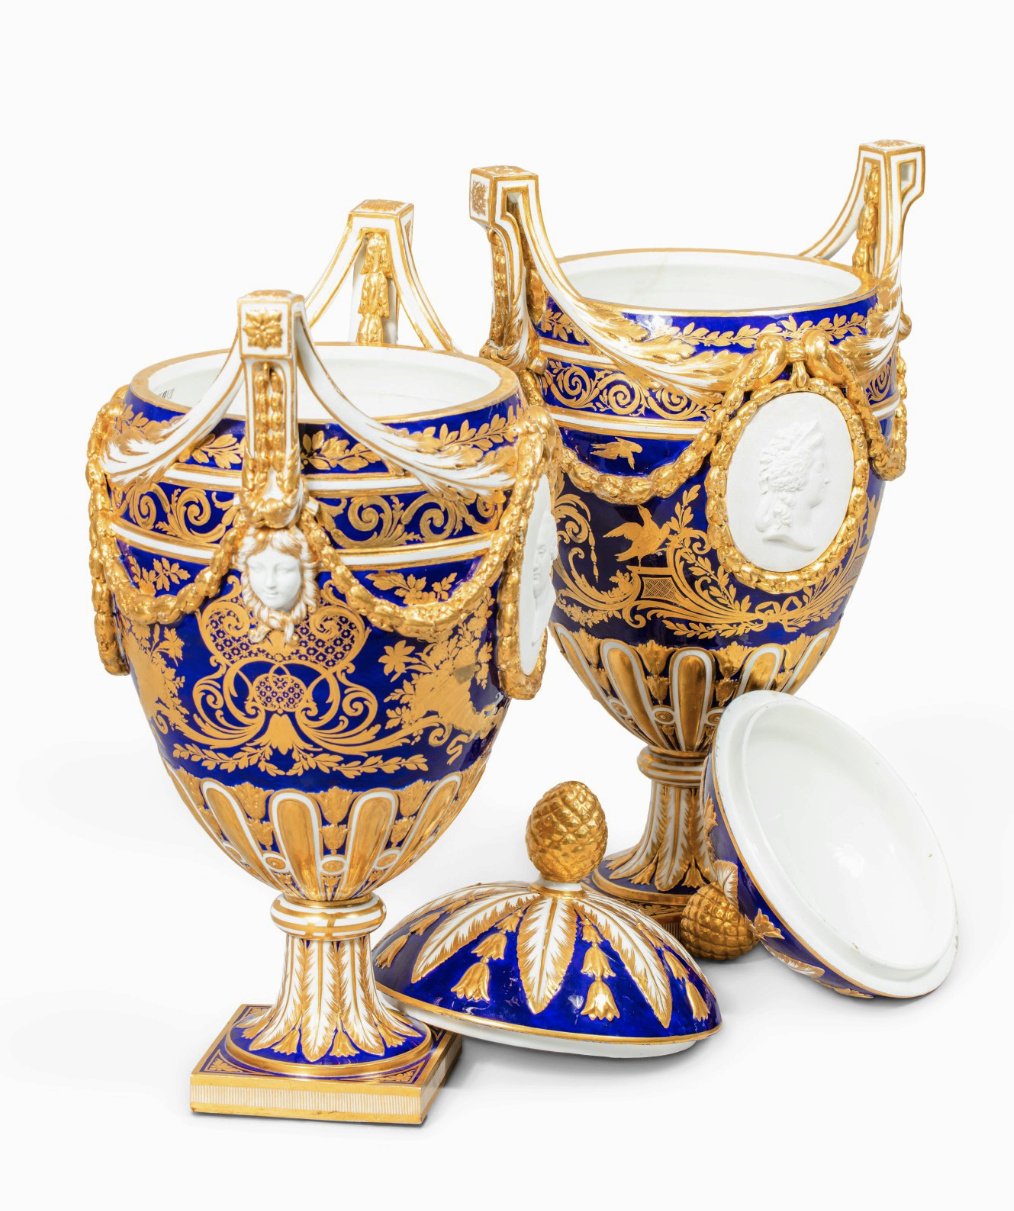 Les vases "oeuf" en porcelaine de Sèvres du XVIIIe siècle Capt1117